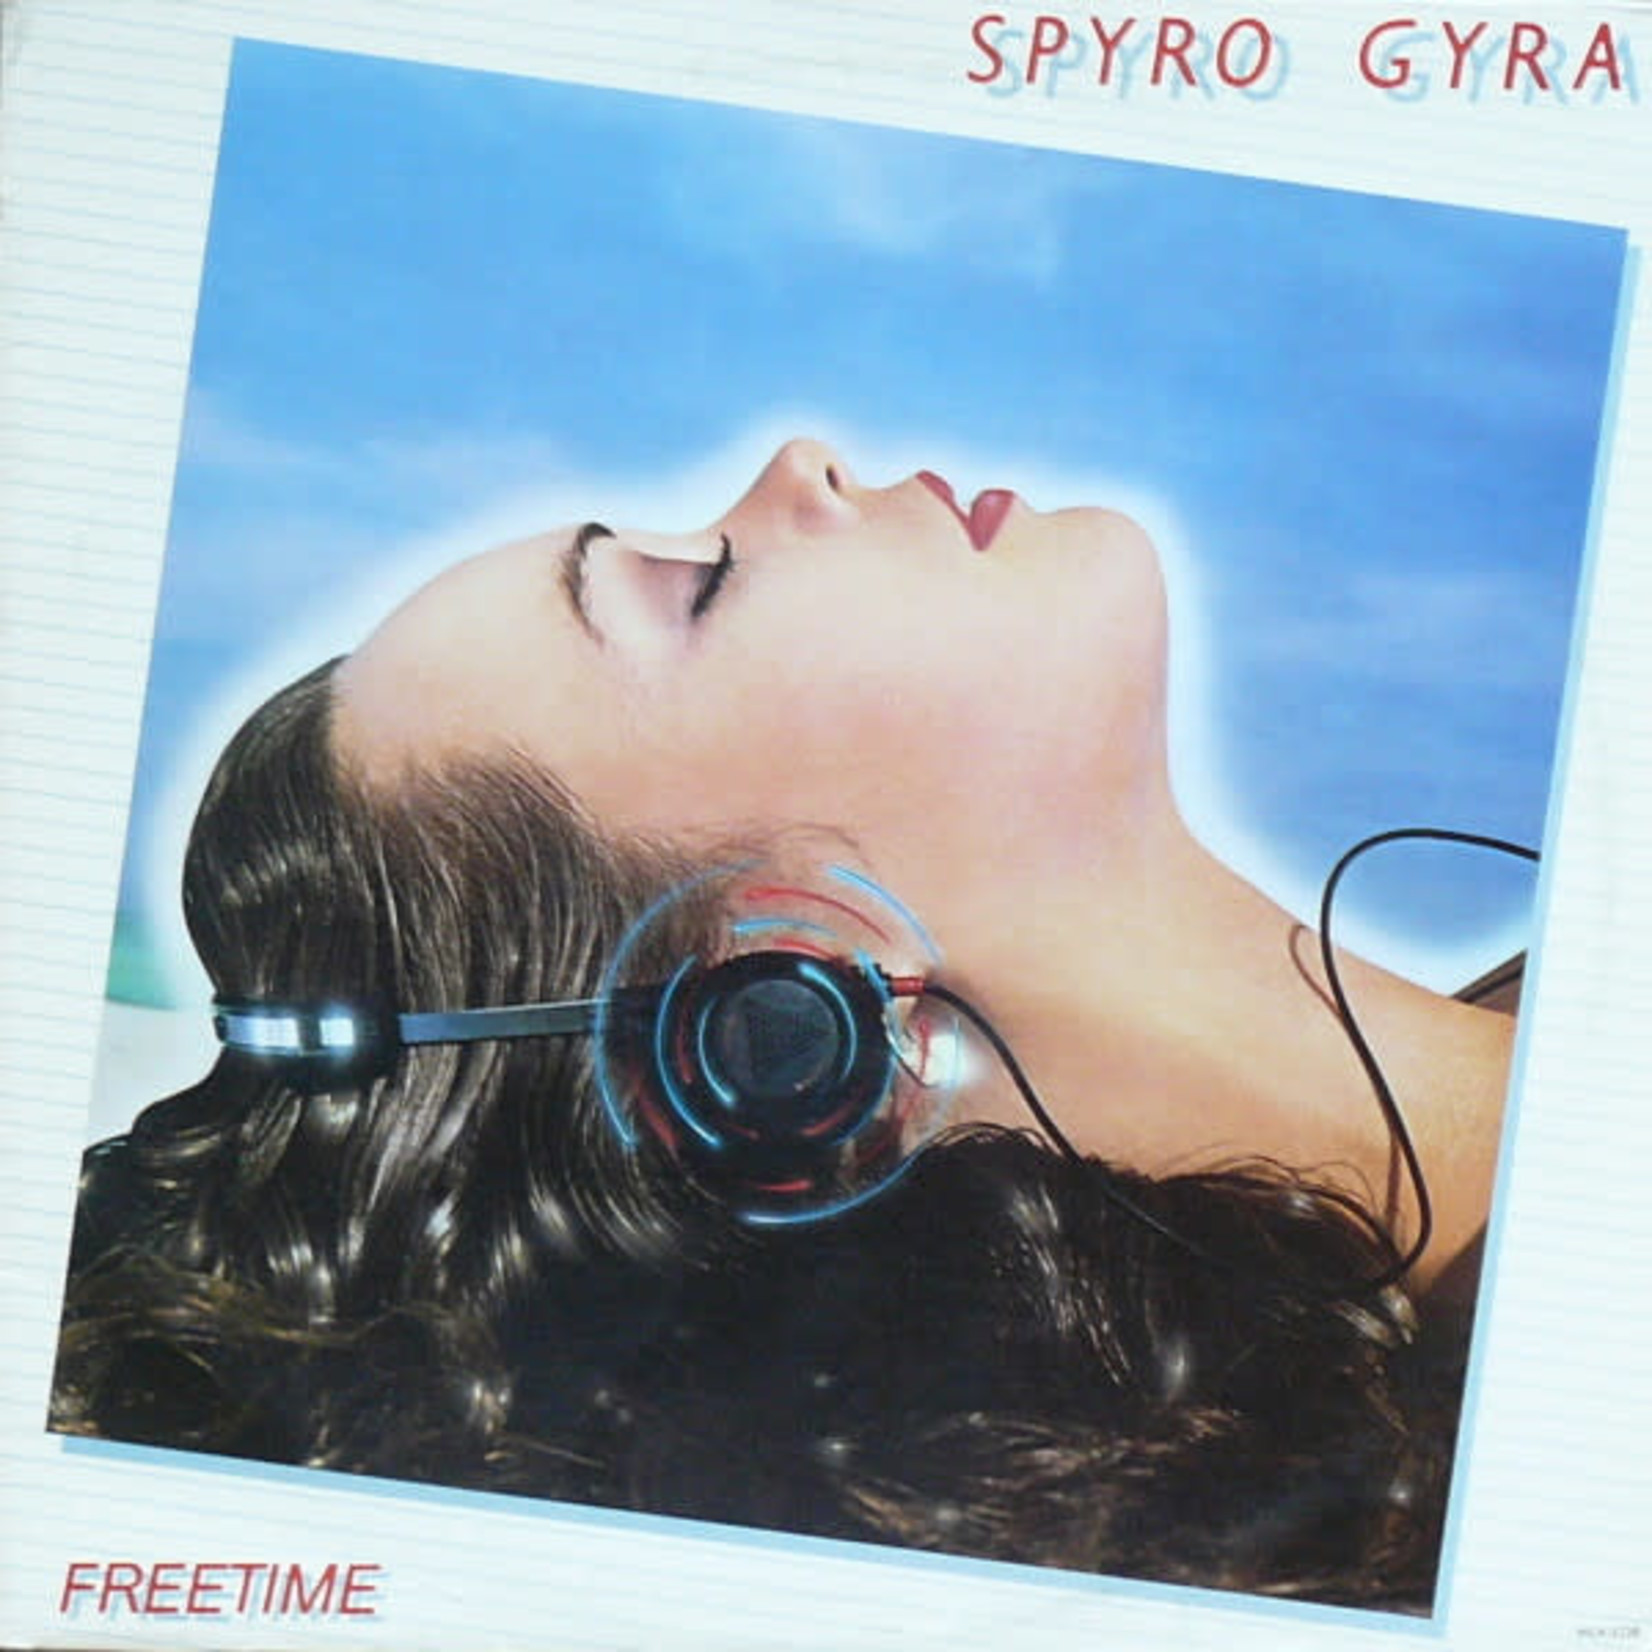 [Vintage] Spyro Gyra - Freetime